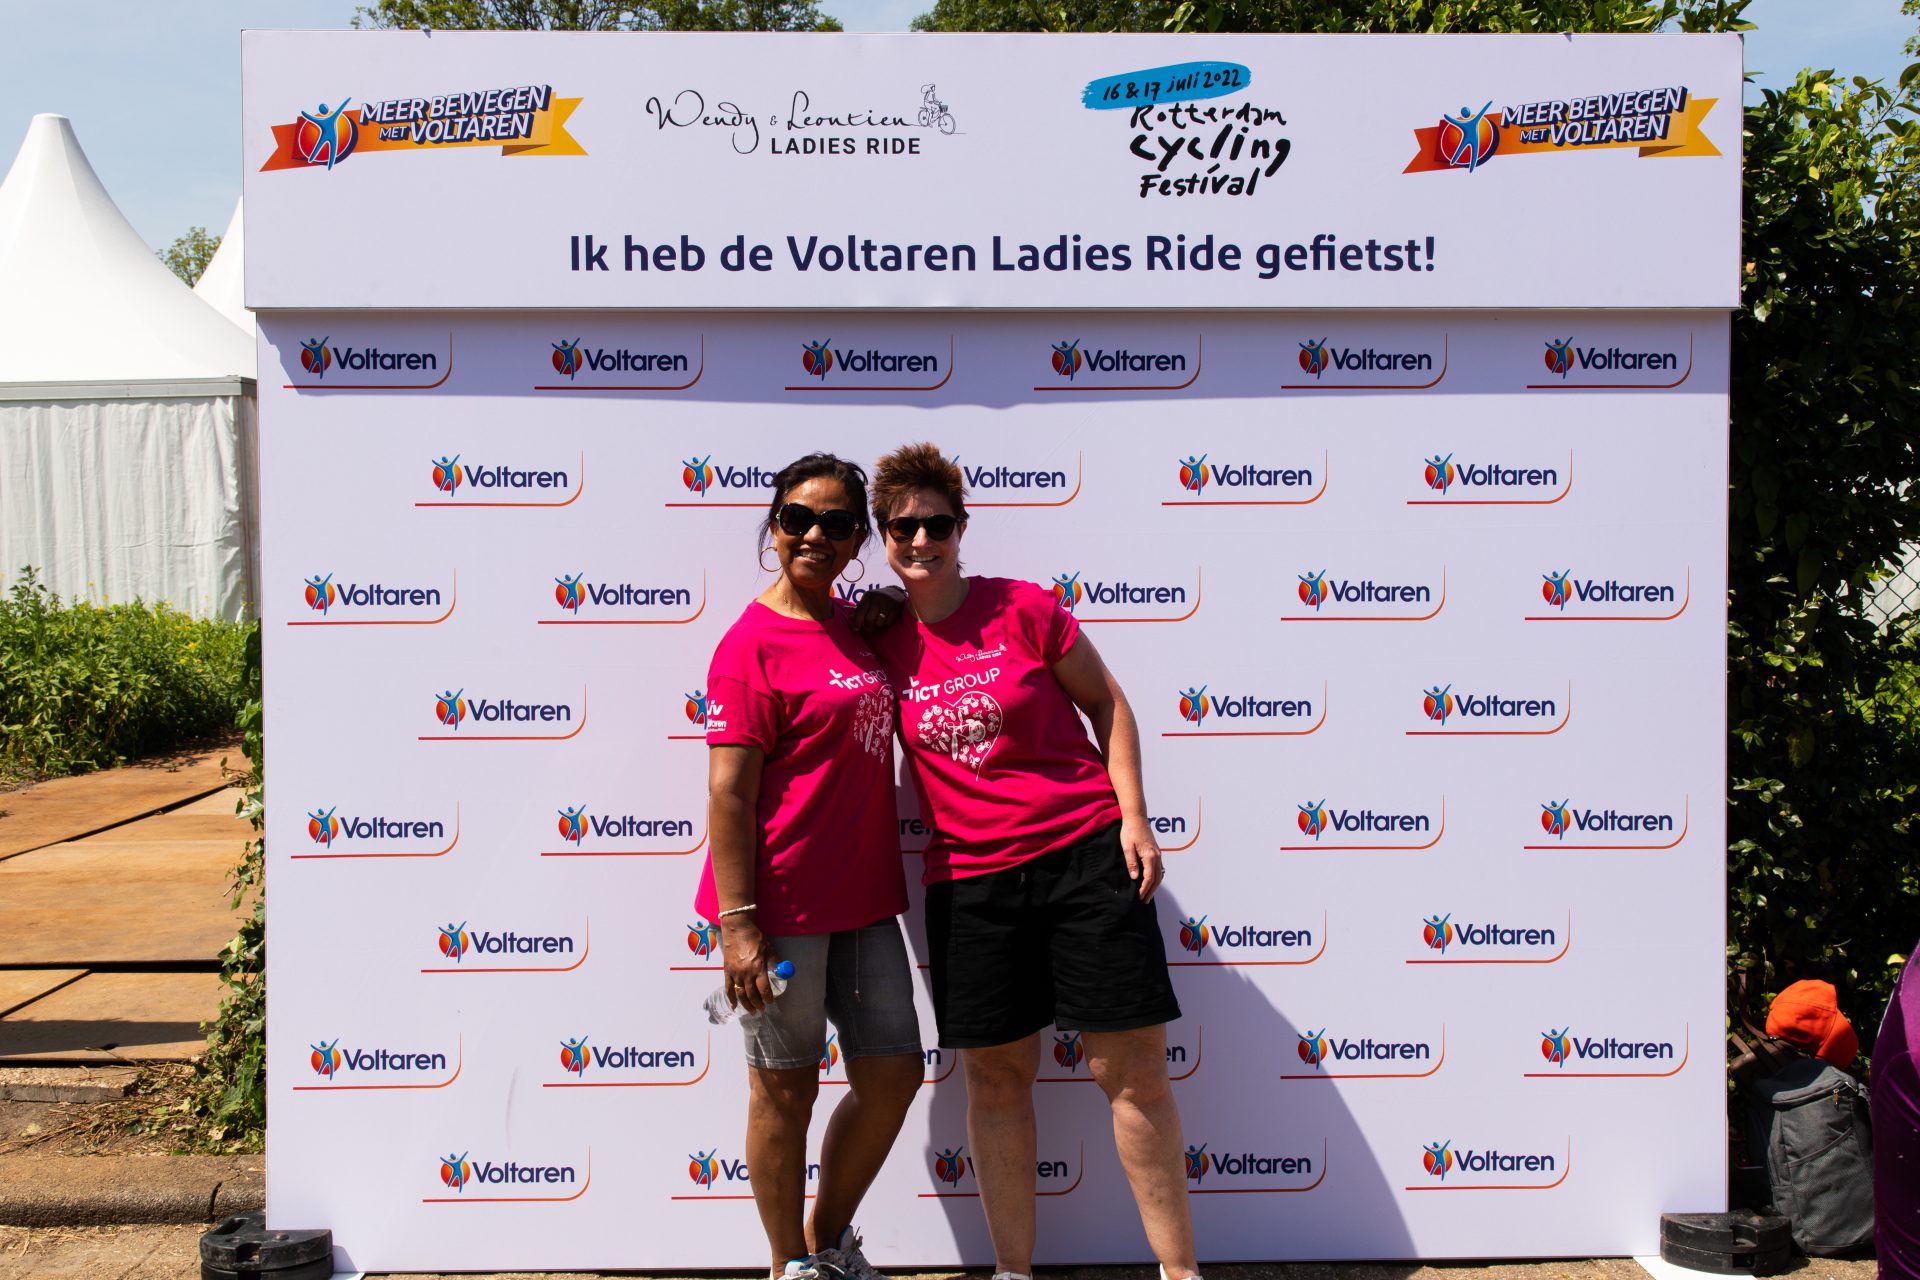 LADIES RIDE VOLTAREN BACKGROUND PHOTOS 61 of 64 Ladies Ride 2022